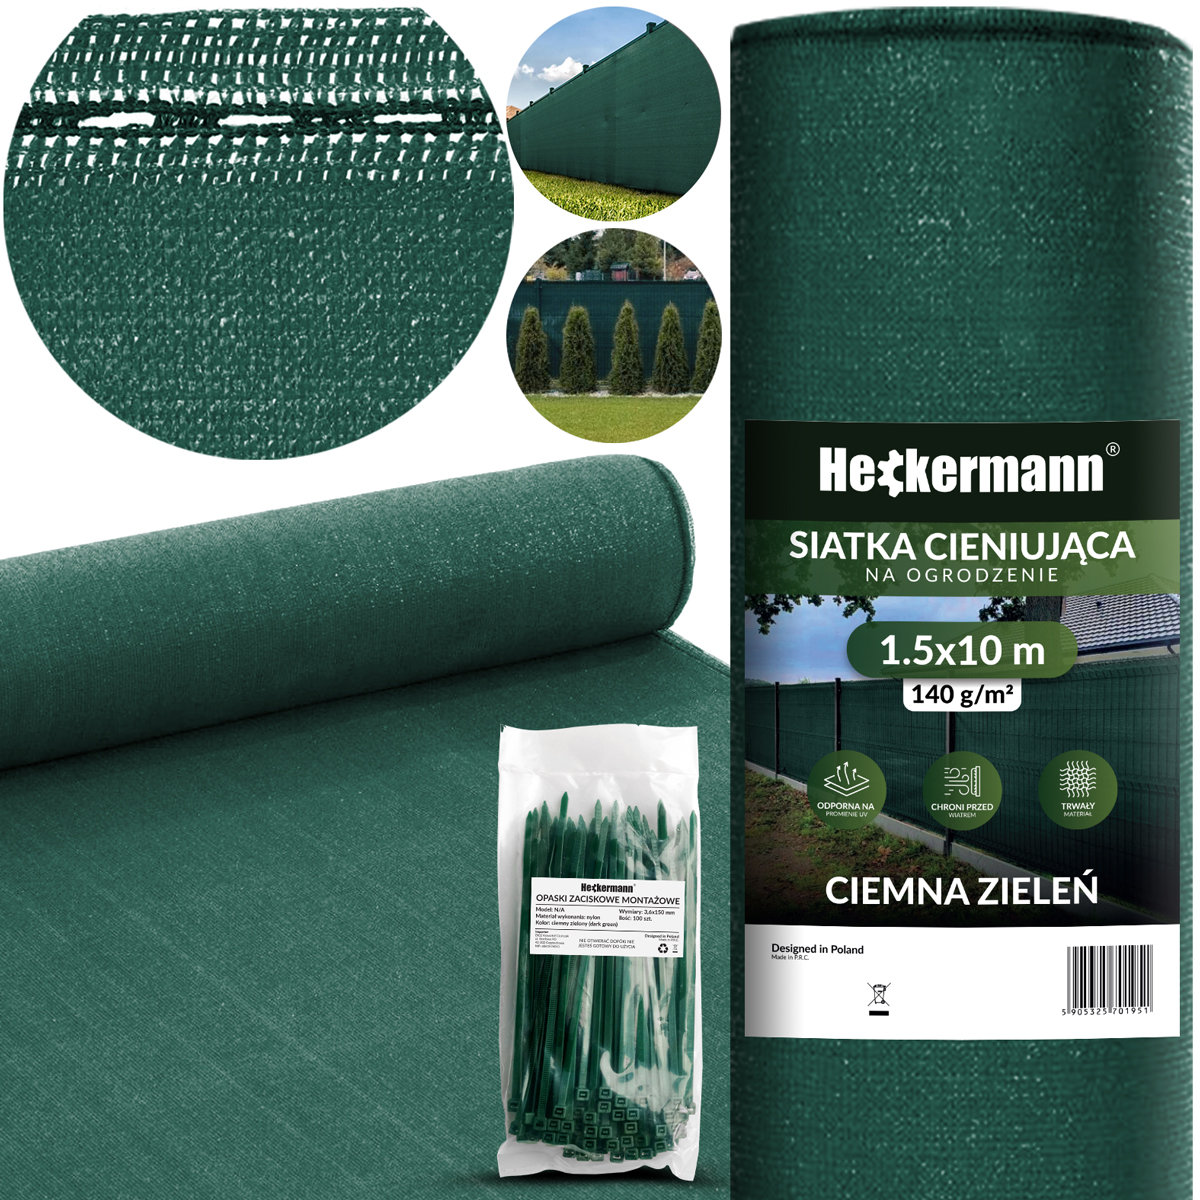 Zestaw Siatka Cieniująca 1,5X10M Heckermann - Zielona + Opaski Zaciskowe Heckermann 100Szt - Zielone